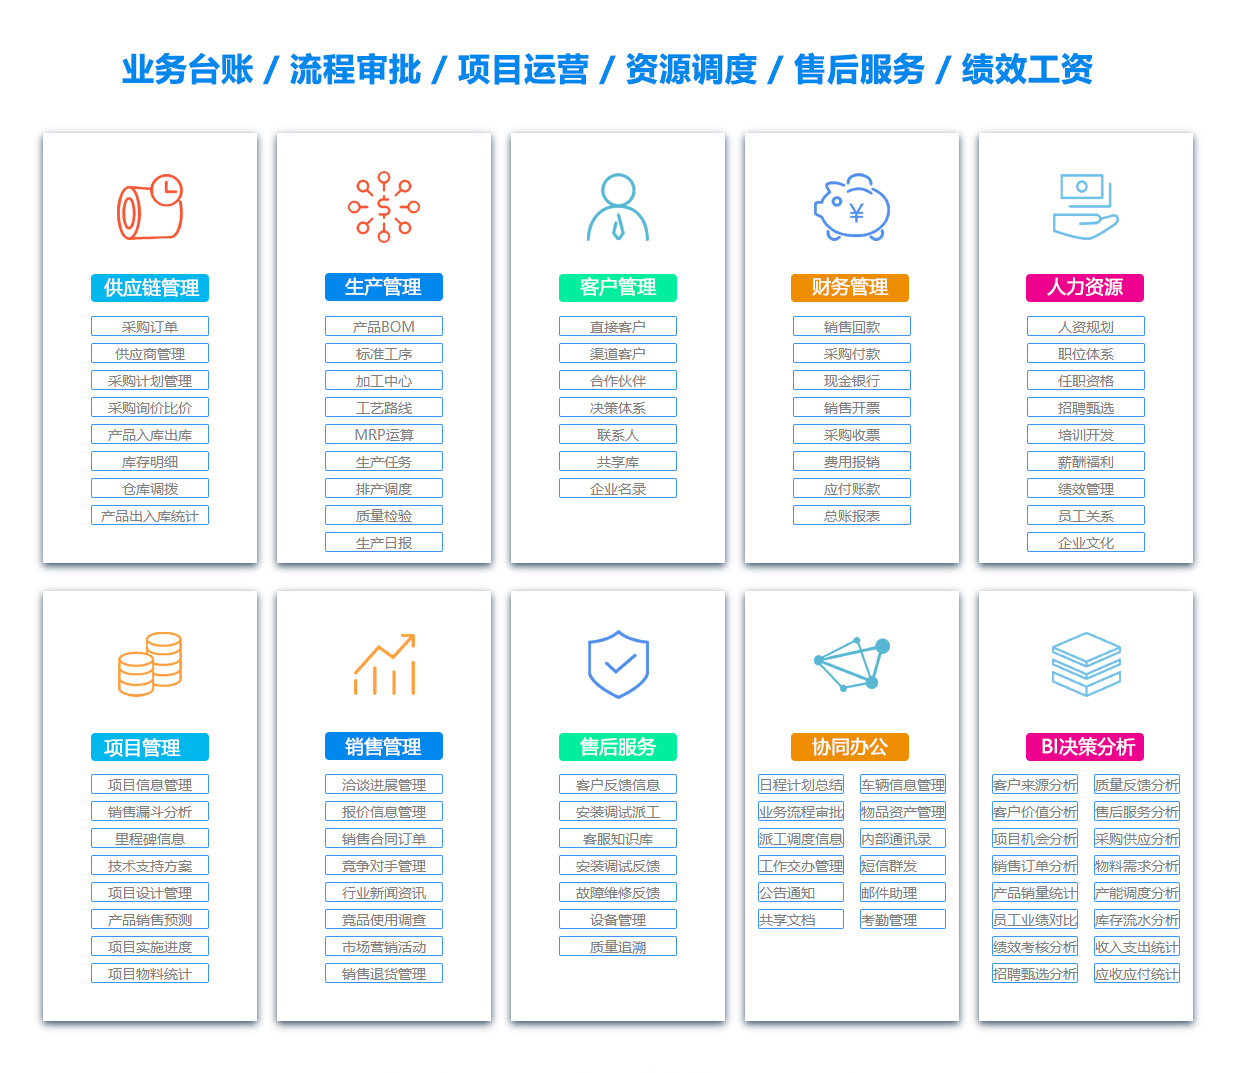 湘潭BOM:物料清单软件